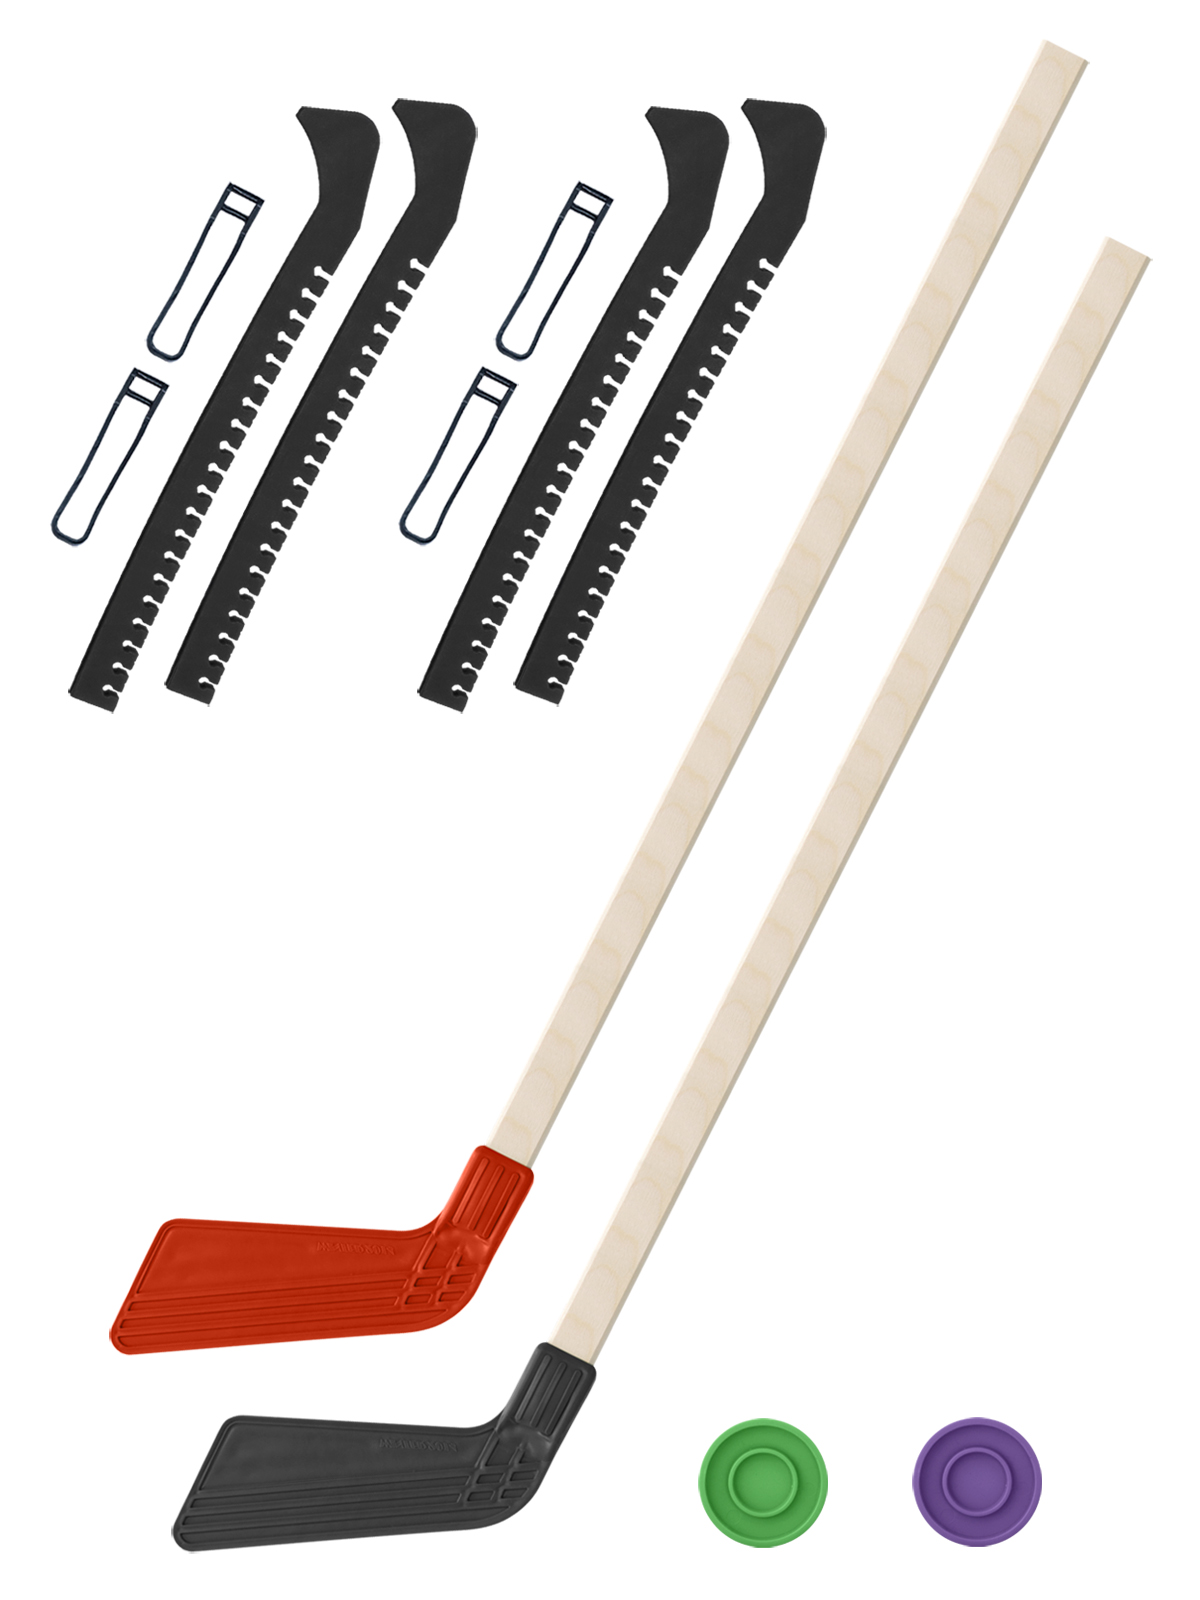 Хоккейный набор Задира-плюс клюшка детская(крас+чер)2шт+2 шайбы+чехлы для коньков черн 2шт